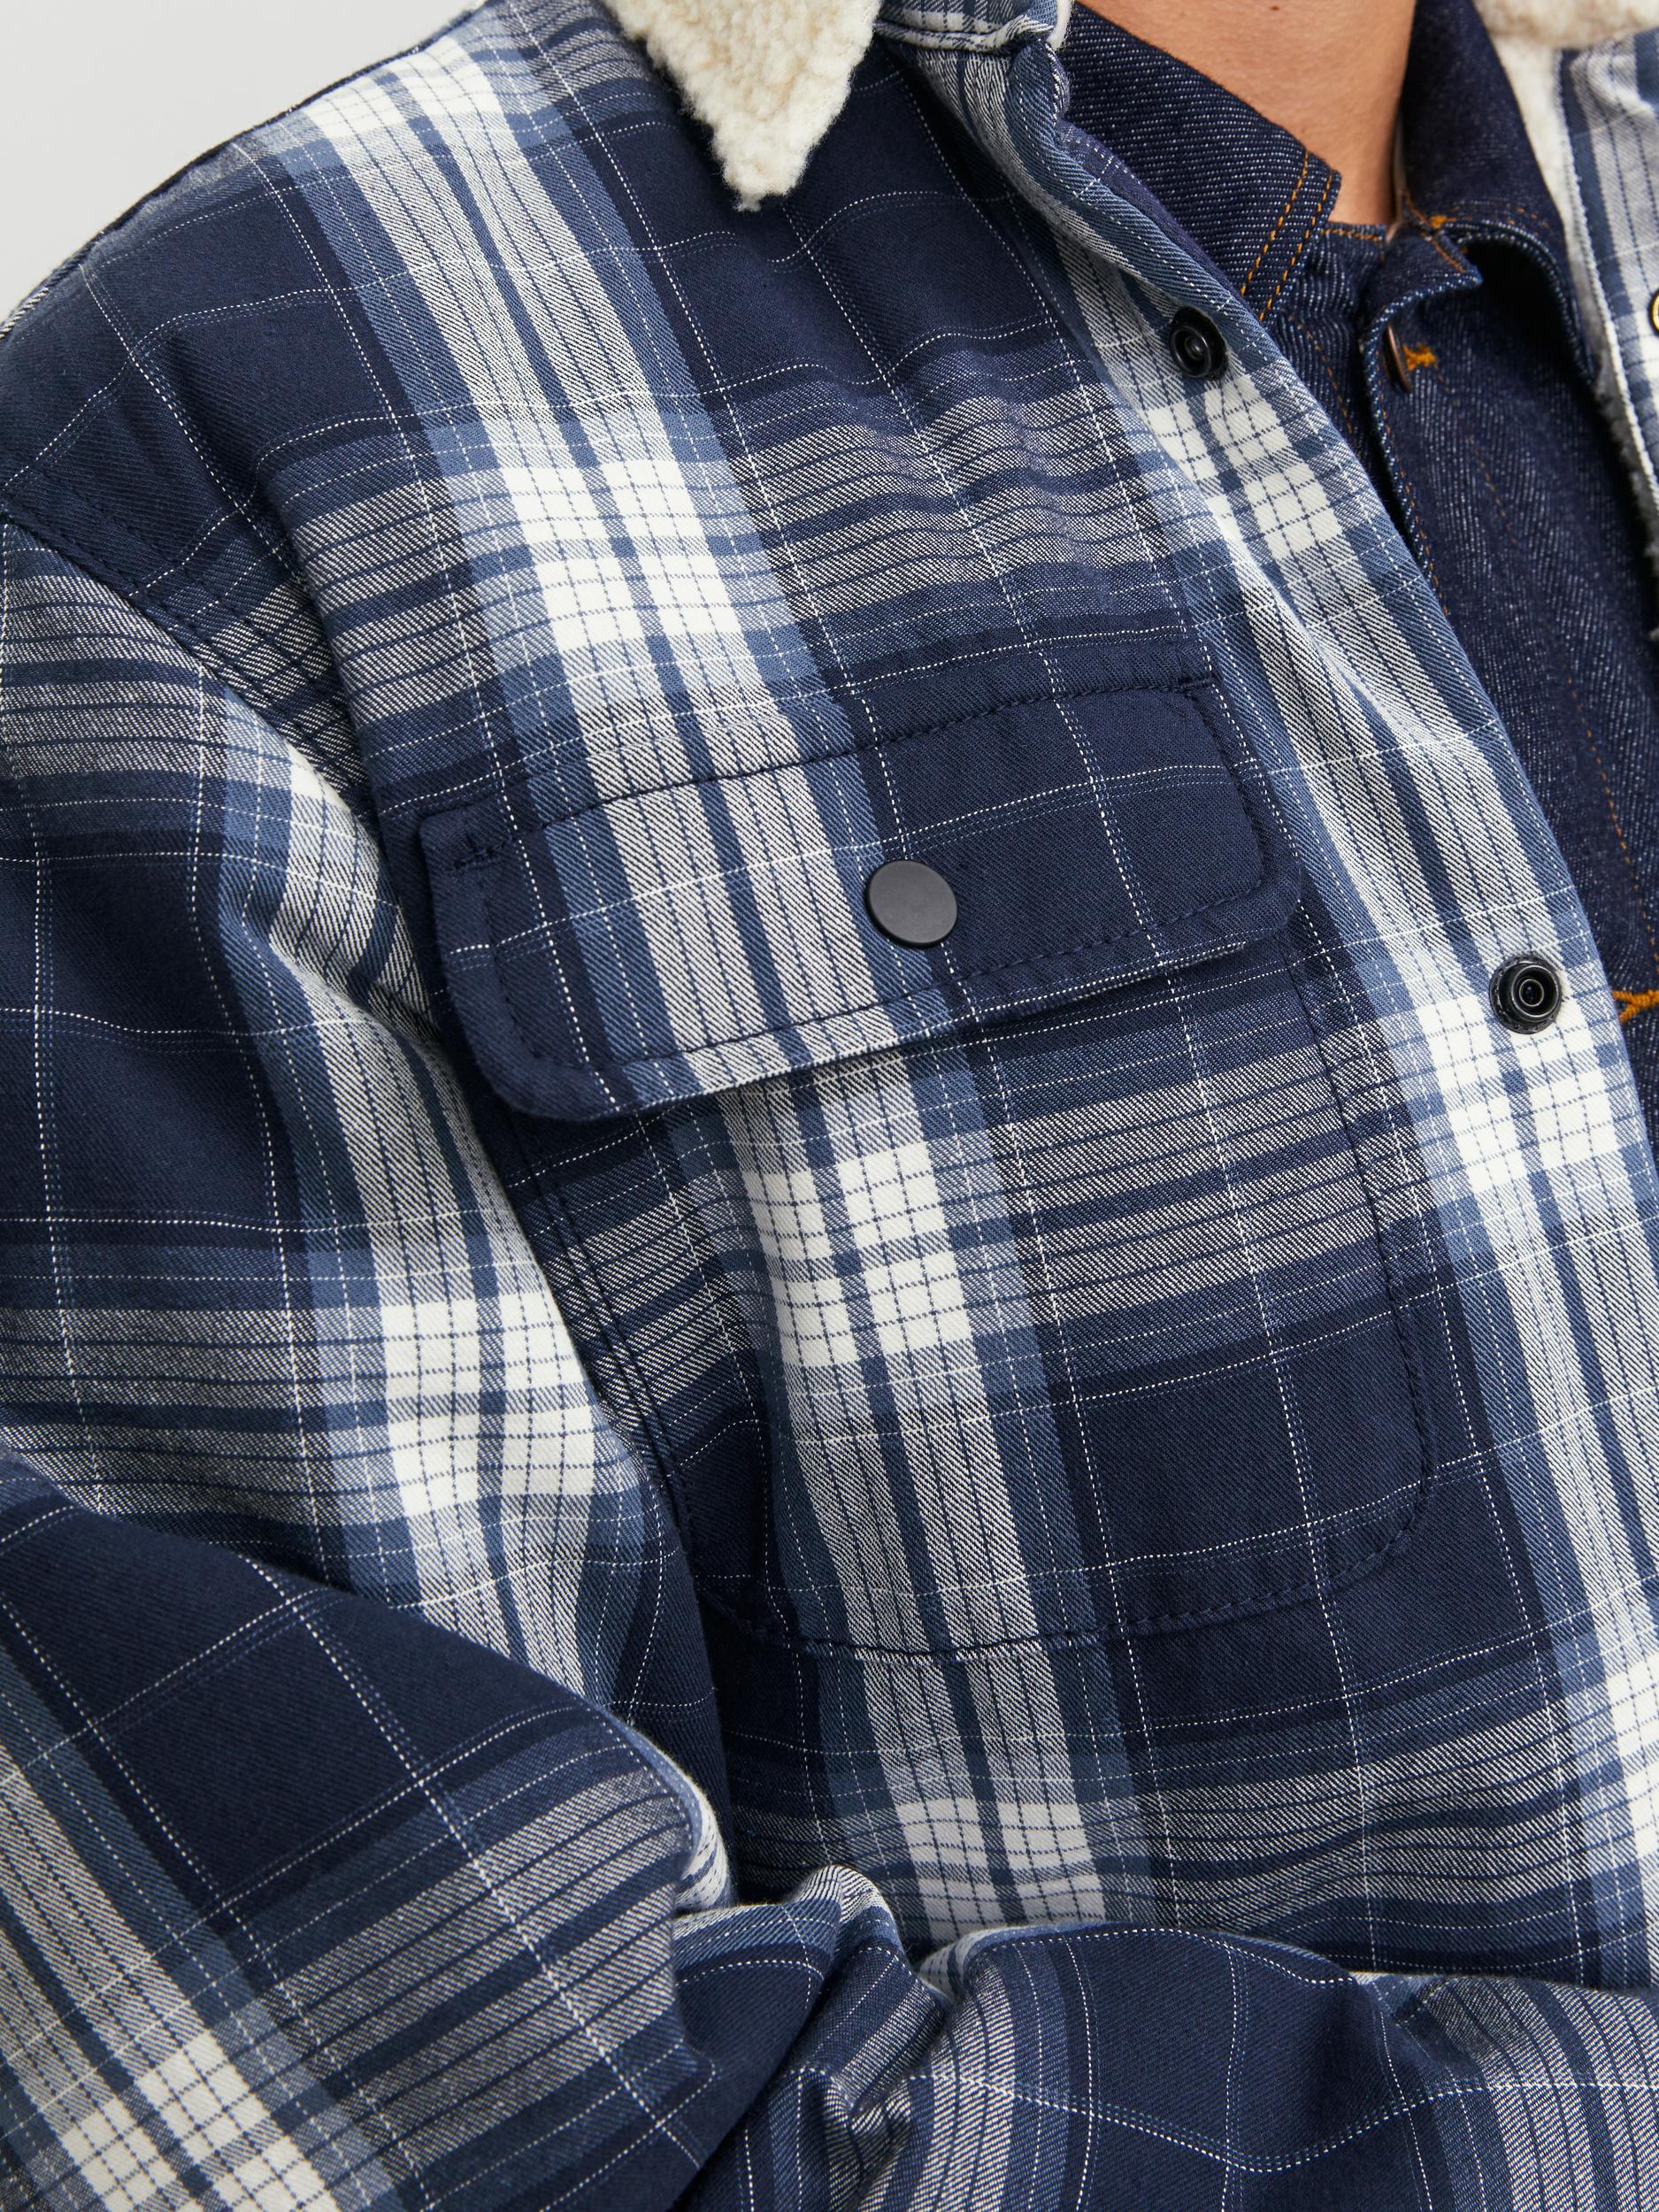 Men's Darren Teddy Overshirt Long Sleeve-Navy Blazer-Front Pocket View